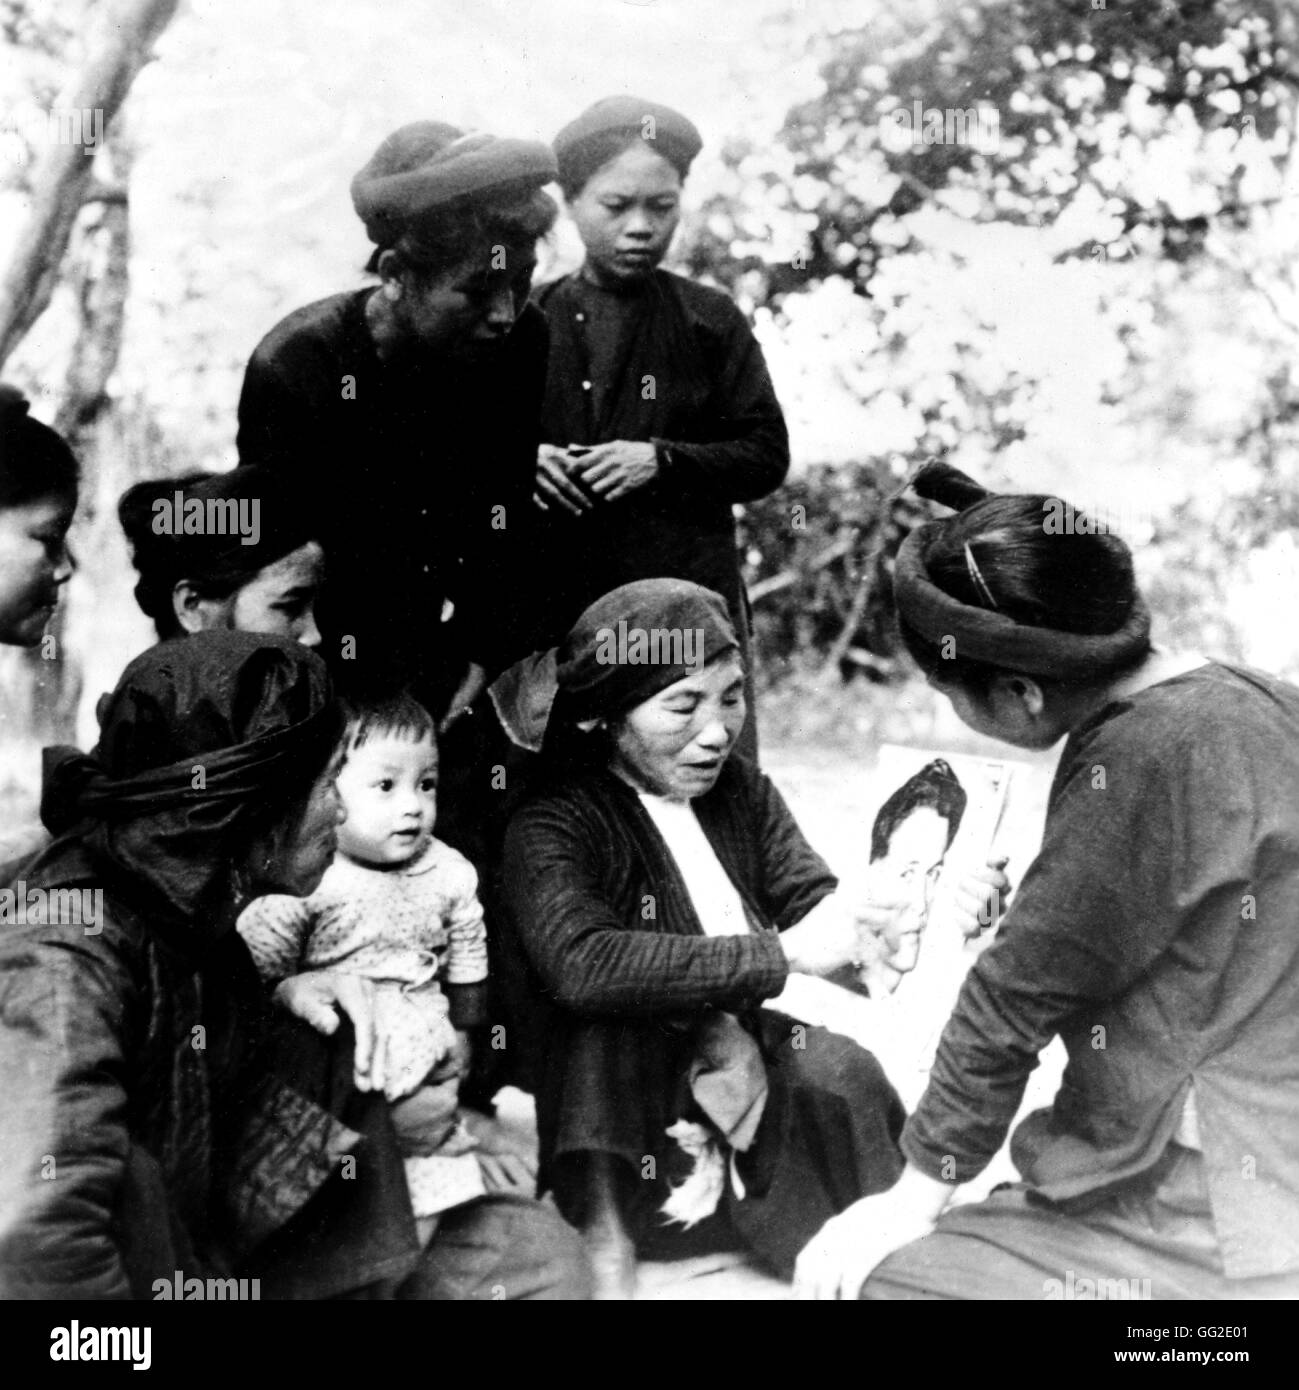 Vu Thi Hang, mère de la dernière héroïne Bui Thi Cuc, discuter avec d'autres femmes sur les activités du combattant pour la paix, Henri Martin 1953 Guerre d'indochine archives nationales, Washington Banque D'Images